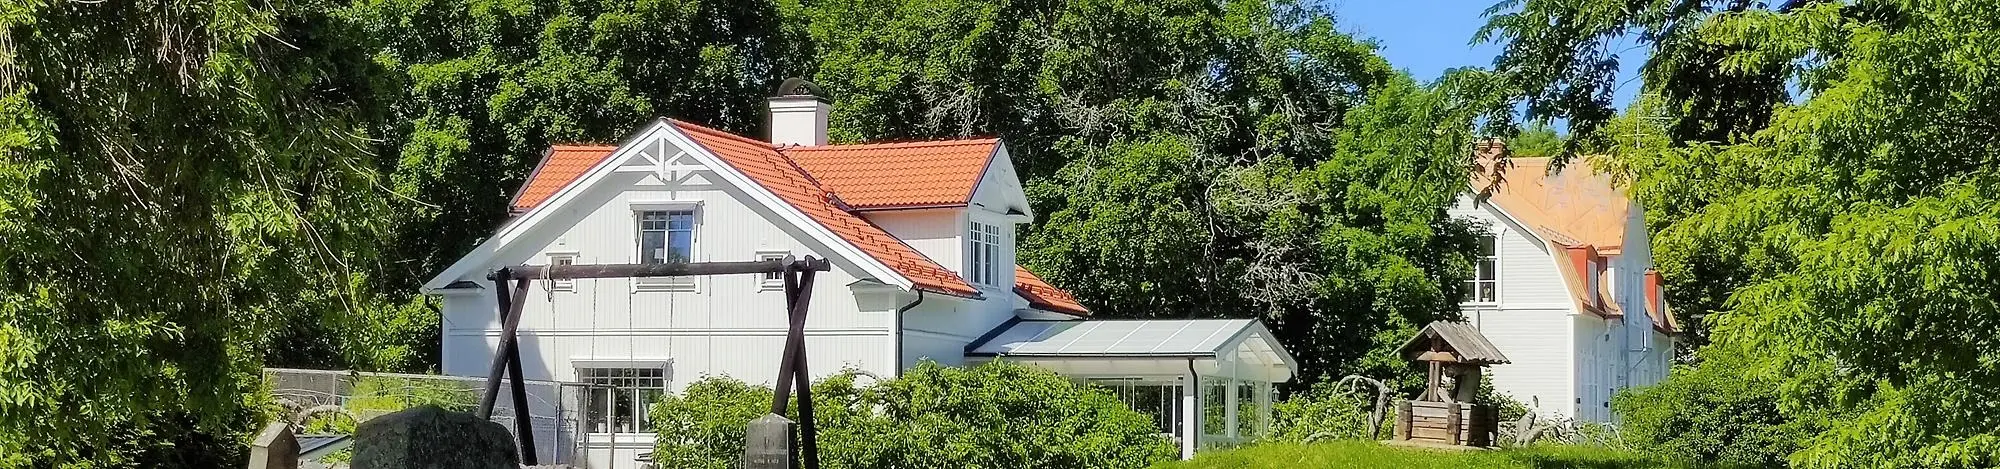 Vita hus med röda tegeltak bland grönskan - Östervåla